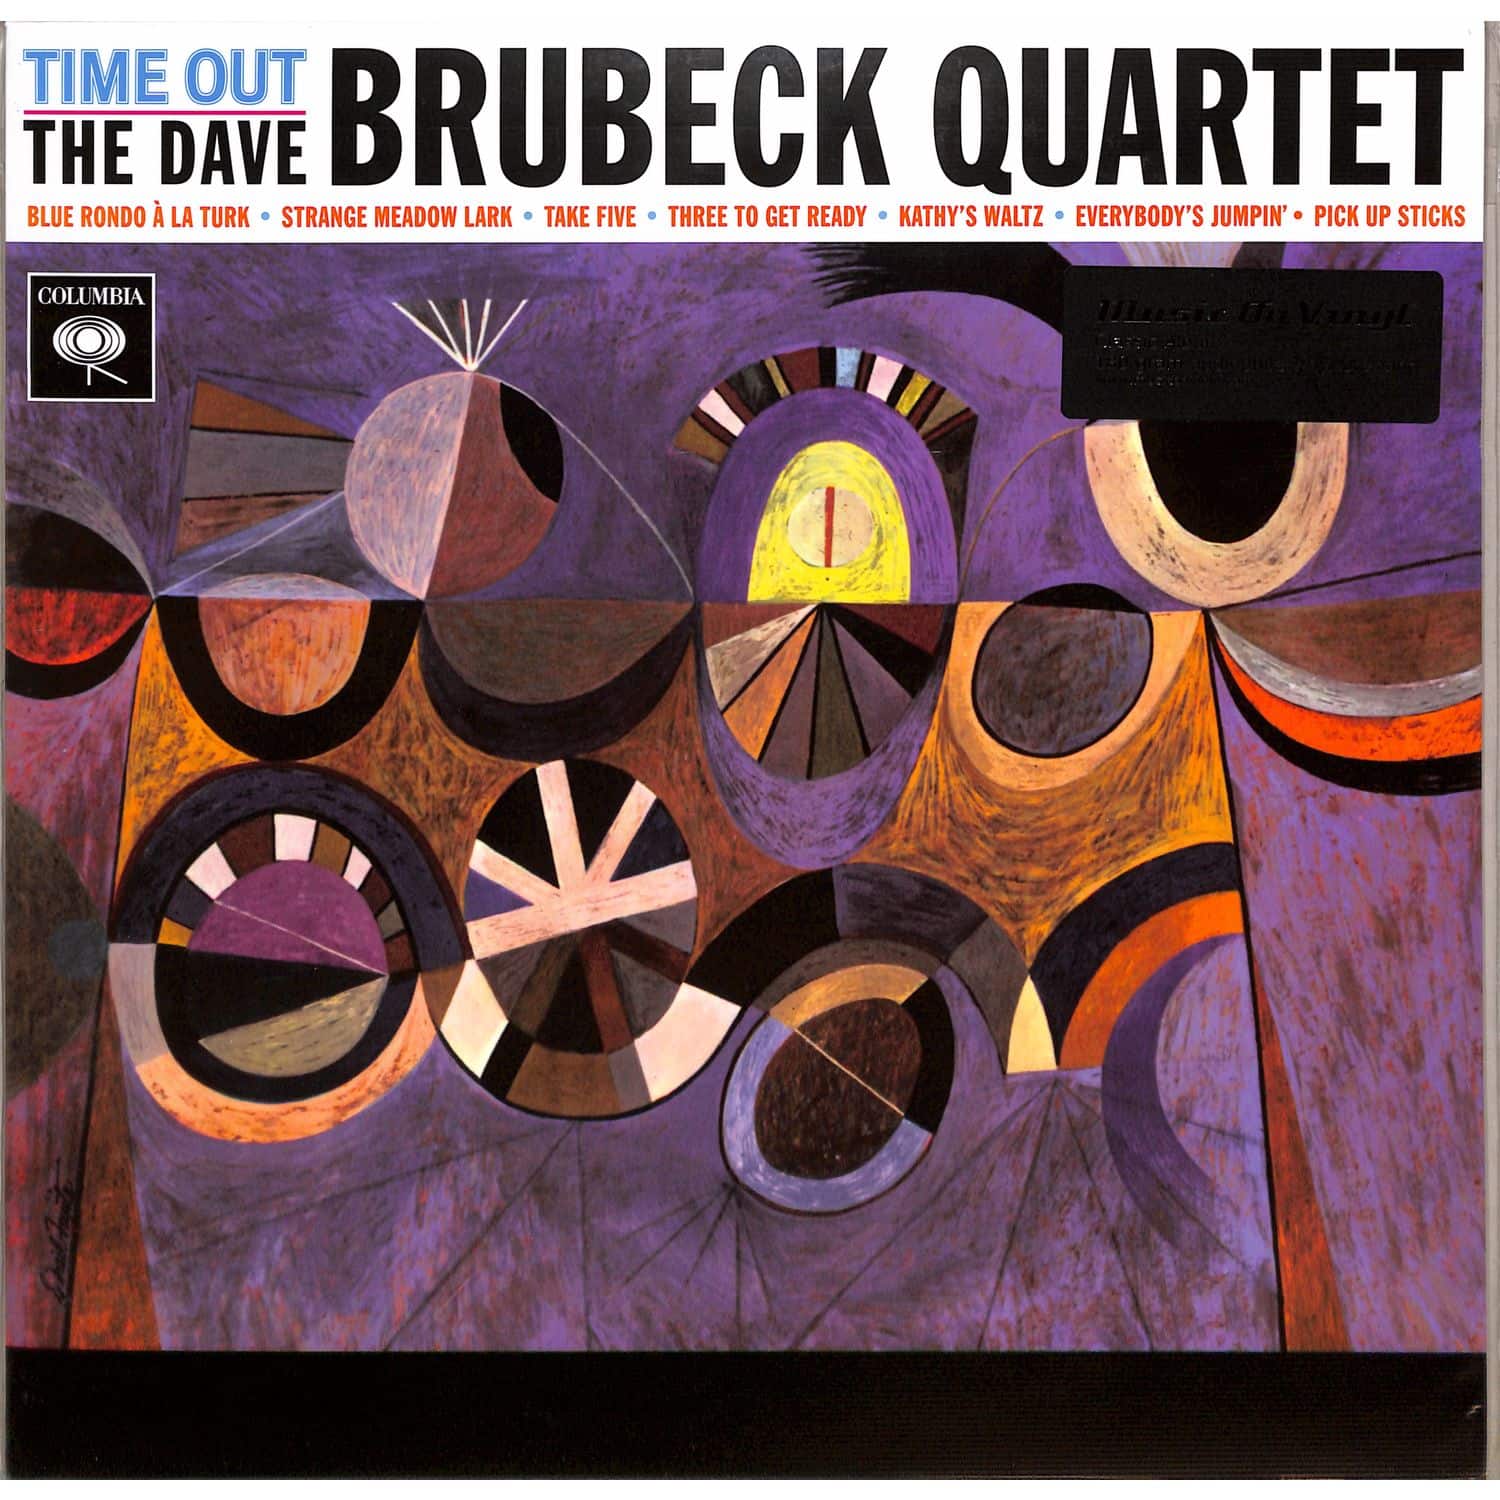 Dave-Brubeck-Quartet - TIME OUT 